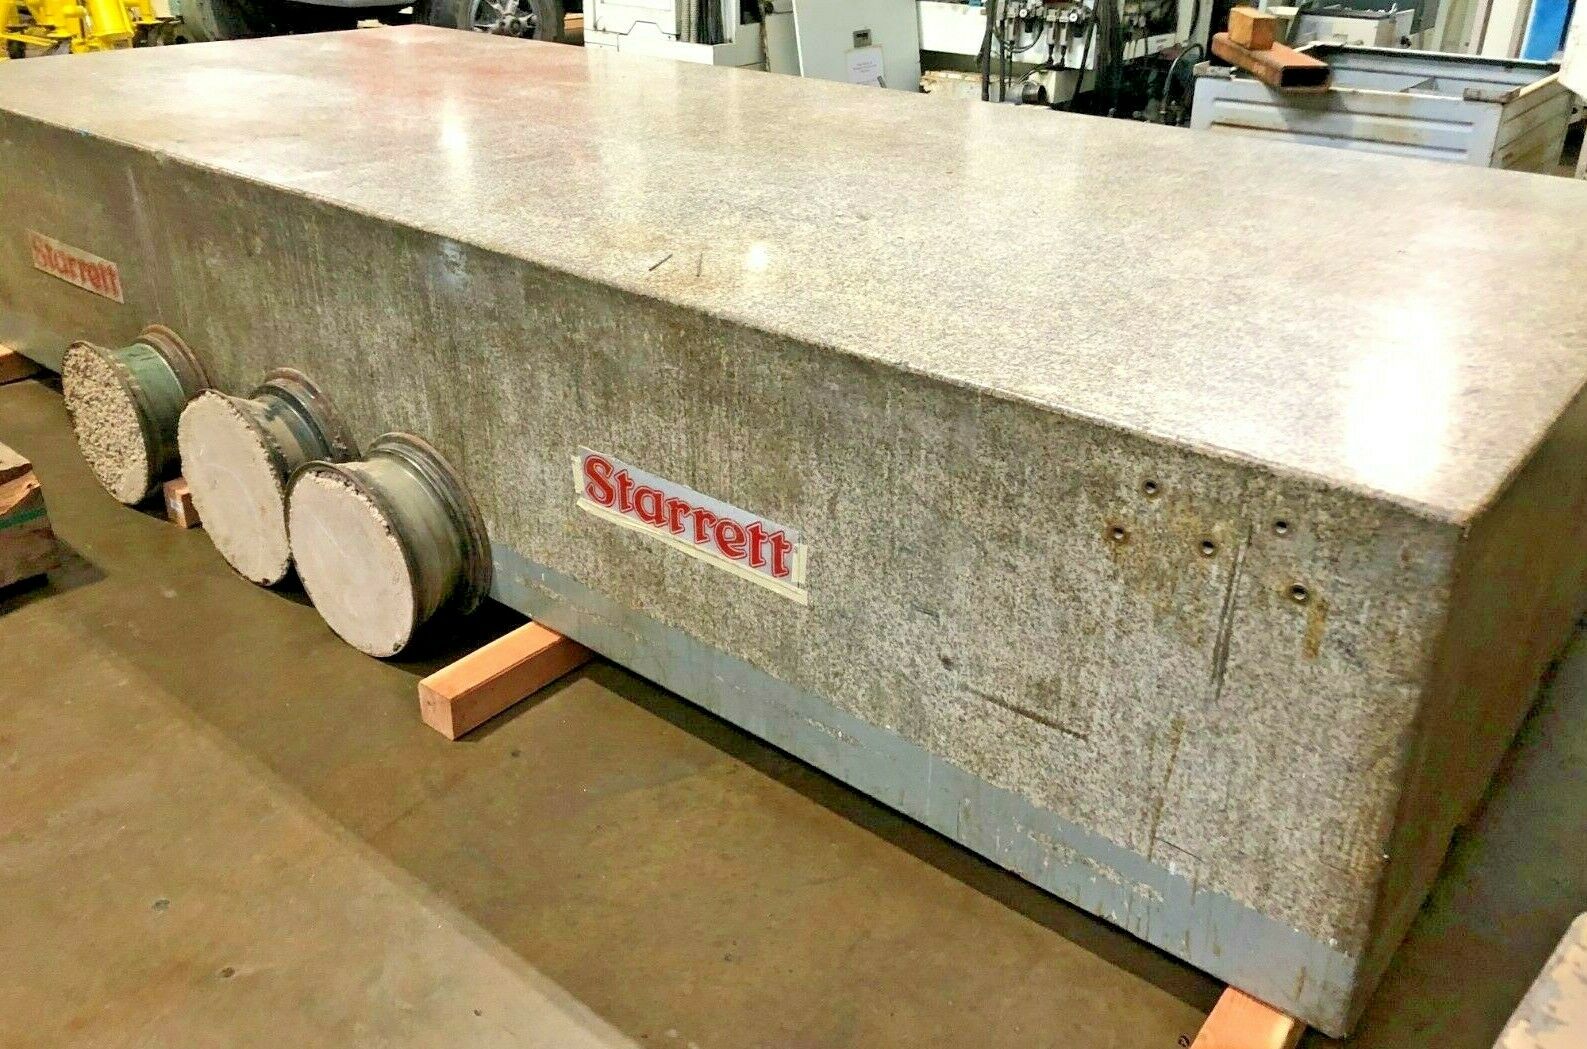 14' x 6' Starrett Granite Surface Plate, 14' x 6' Starrett Granite Lay Out Table, Large Starrett Granite Surface Plate, used Starrett Surface Plate For Sale